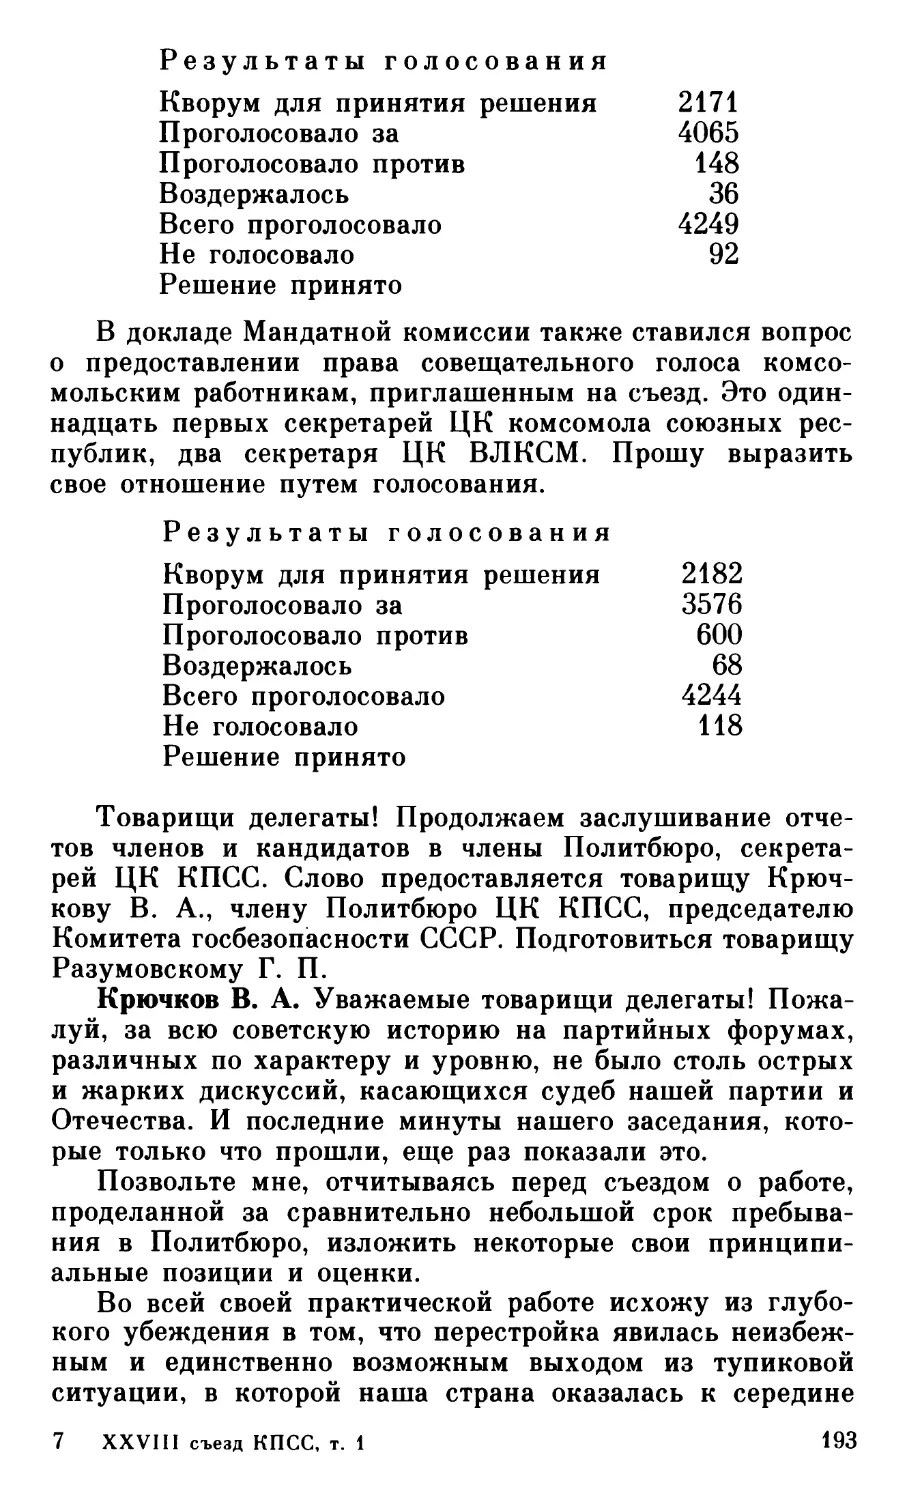 Отчеты членов и кандидатов в члены Политбюро, секретарей ЦК КПСС